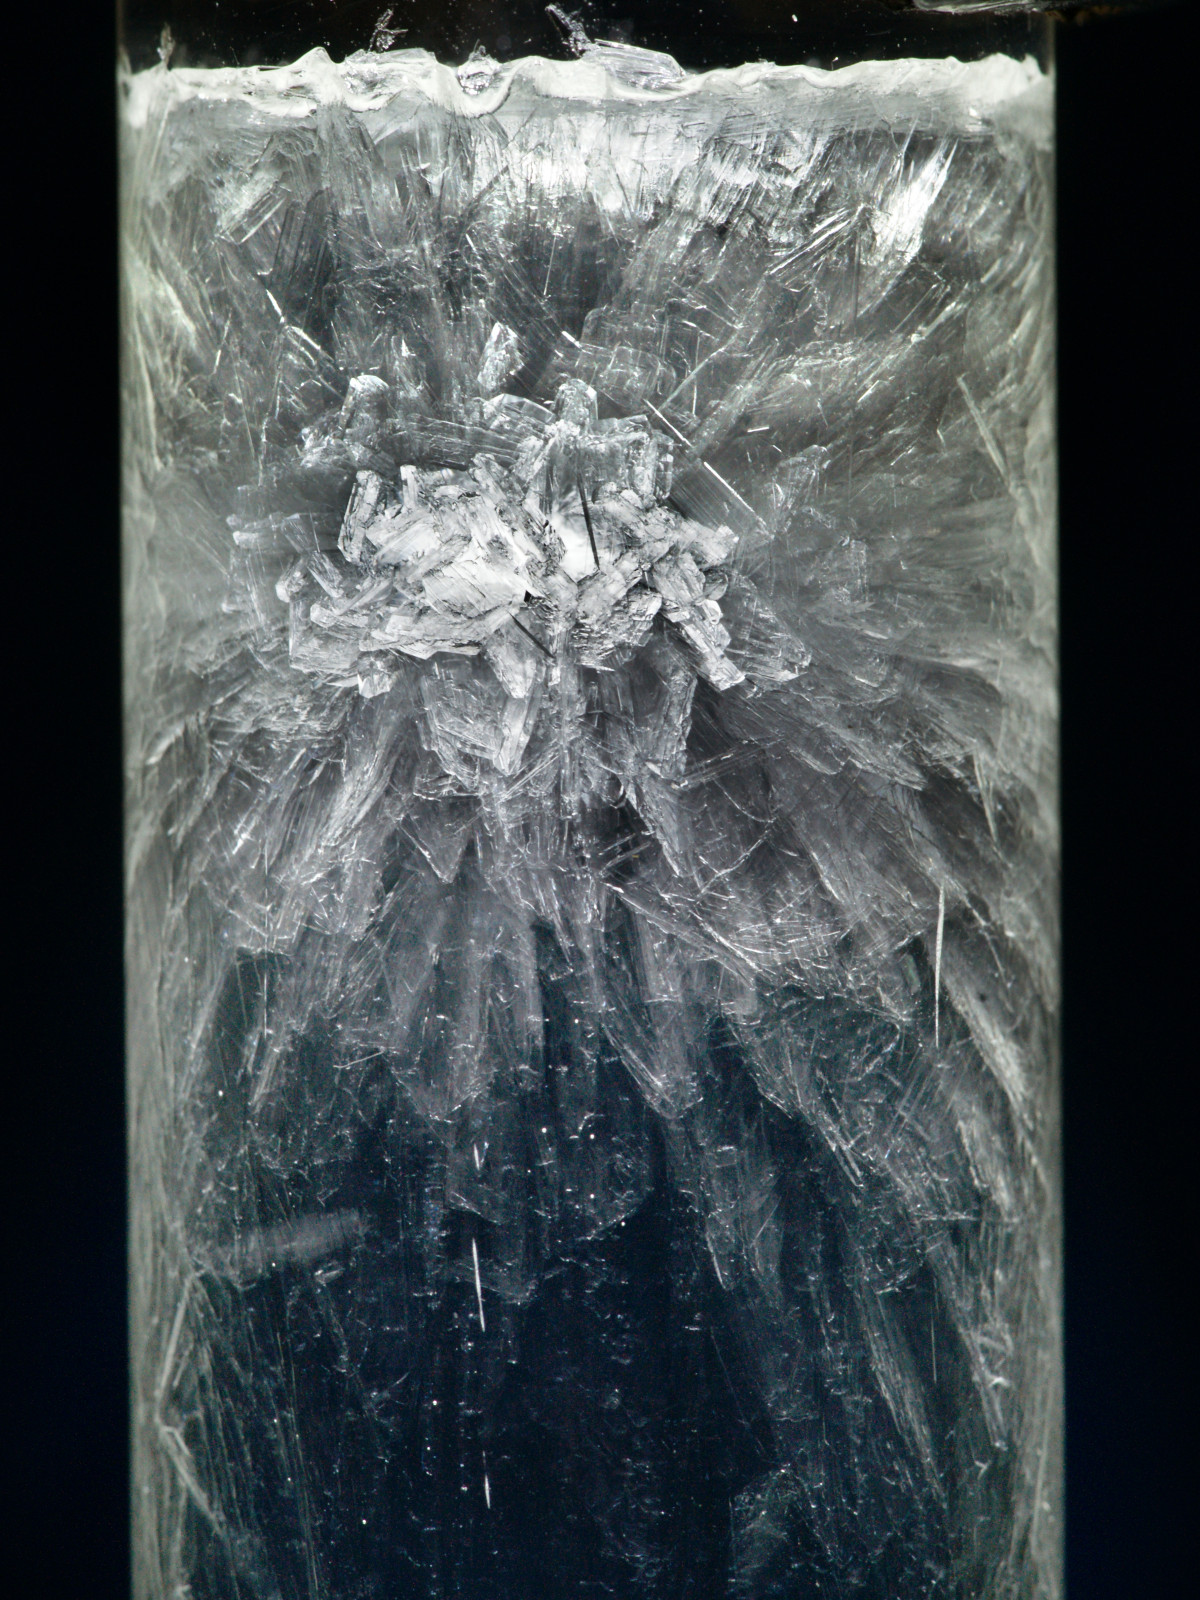 Kristallisation von Natriumsulfat - Experimente aus dem Institut Dr. Flad